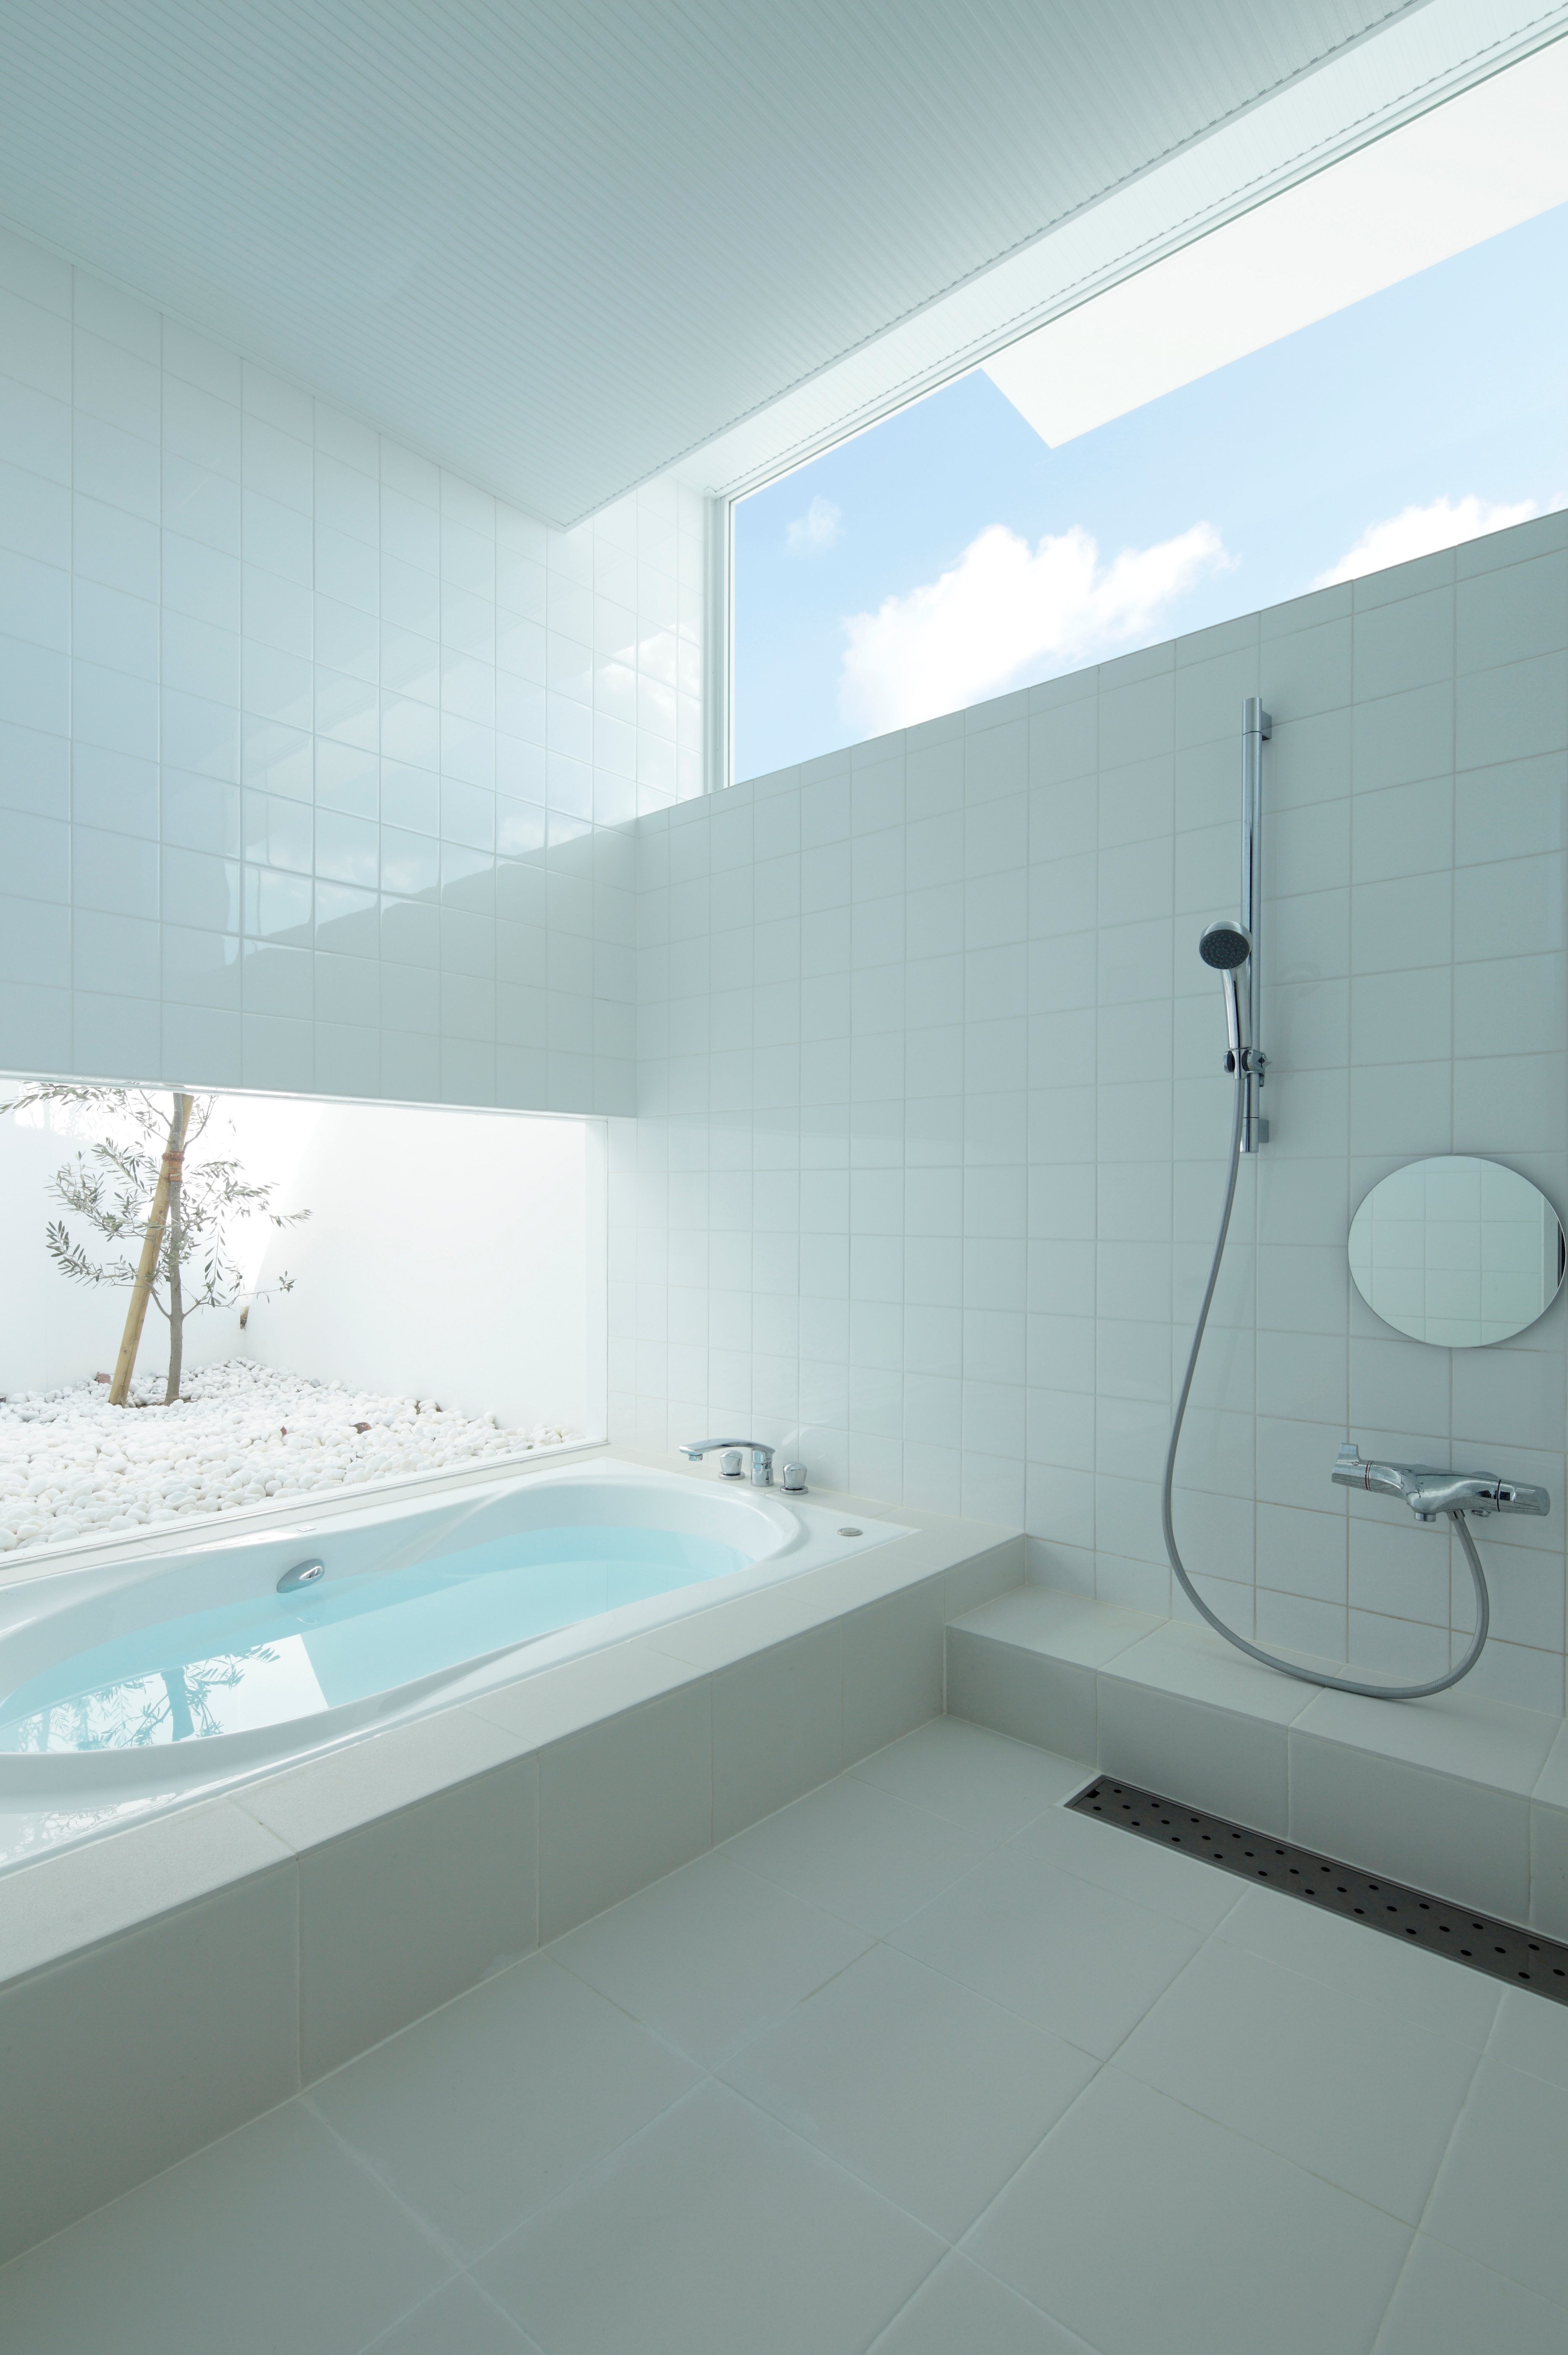 浴室是一个引人注目的、原始的白色瓷砖和阳光的广阔空间，开放式淋浴和按摩浴缸相邻，从左边较低的窗户可以看到外部的白色岩石花园。